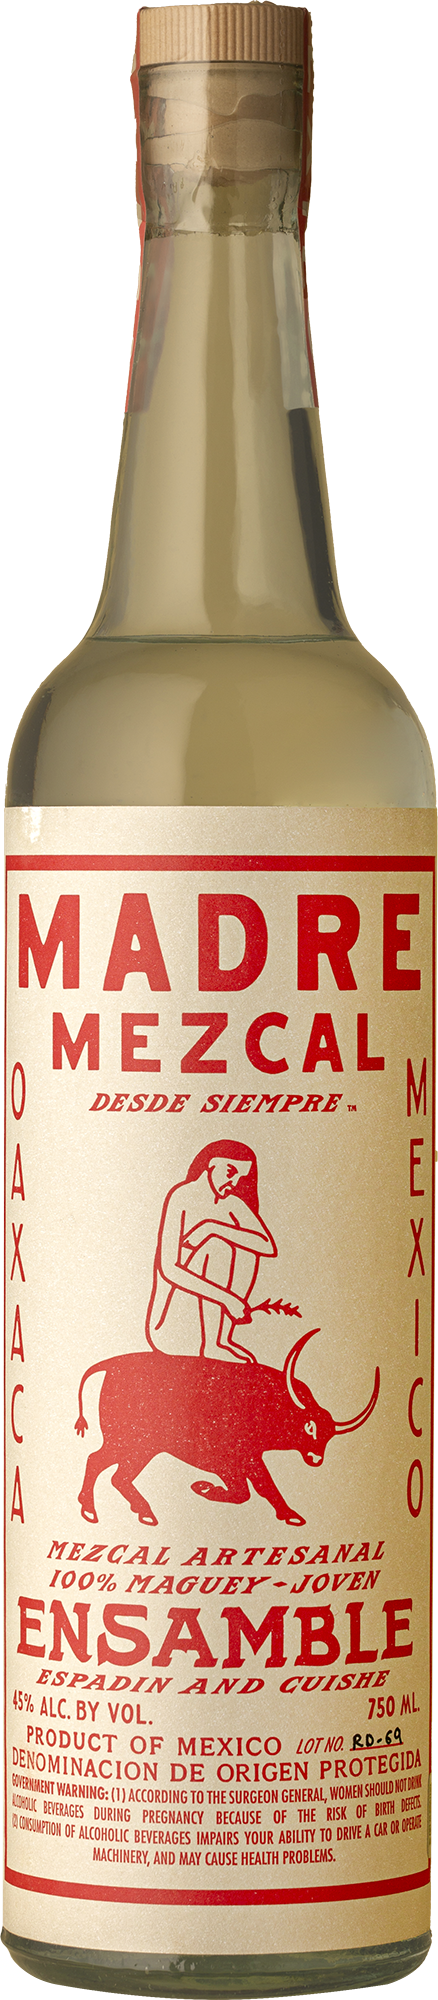 Madre - Mezcal Ensamble Not Wine